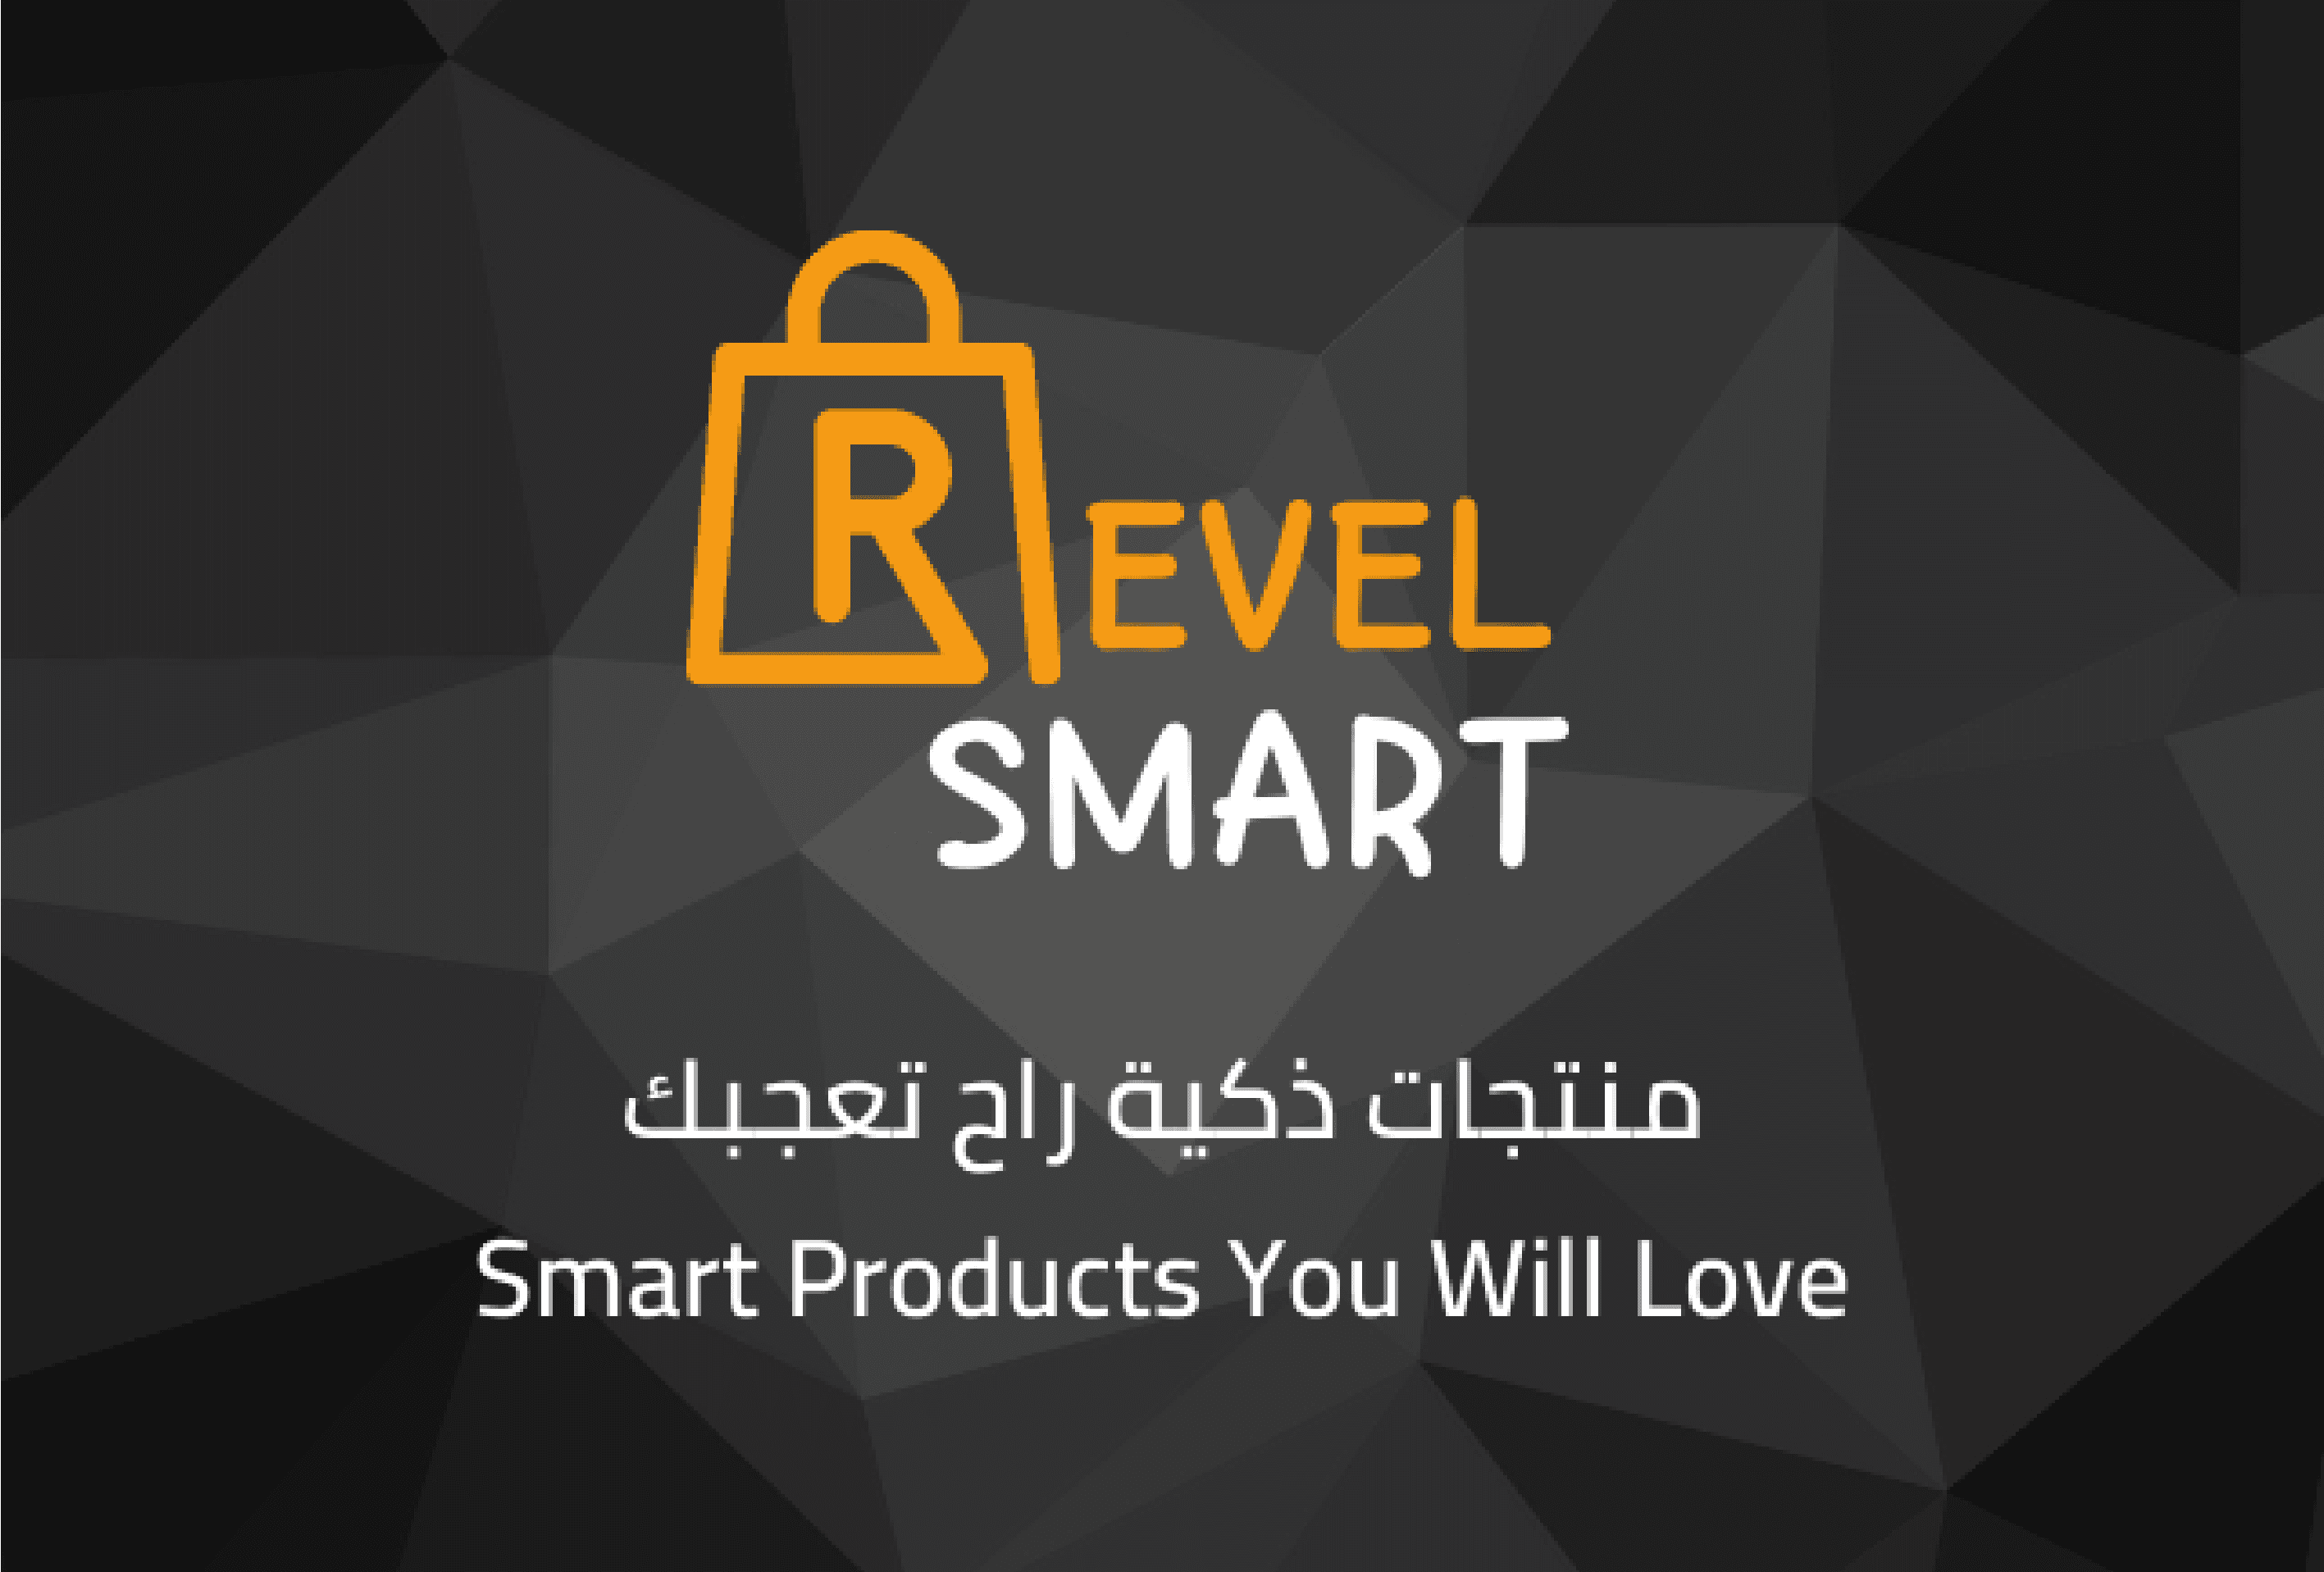 Revel Smart for Electronics